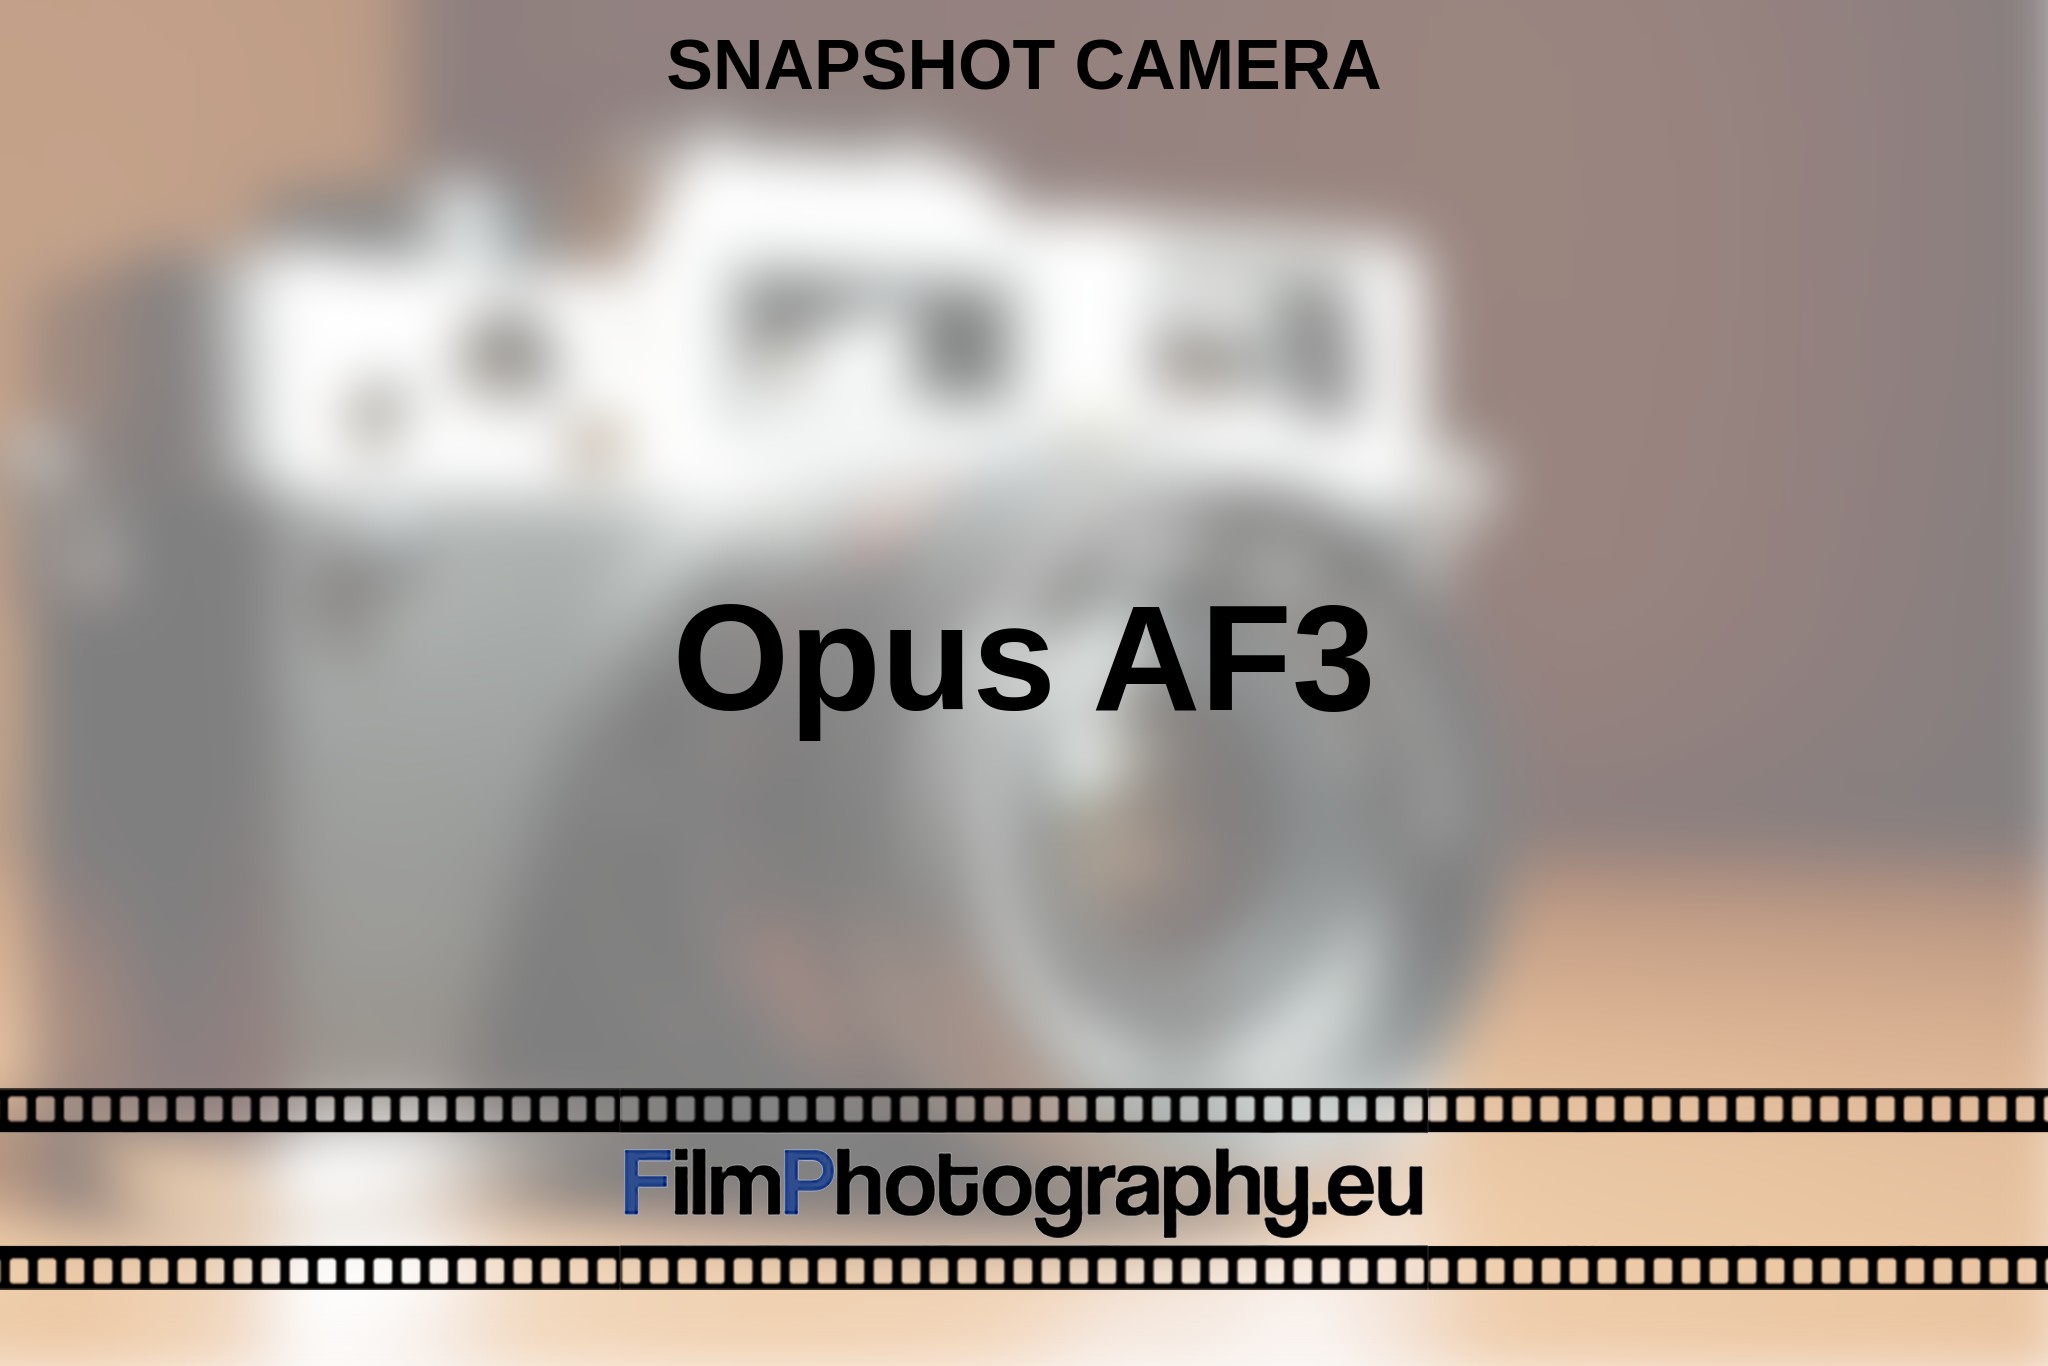 opus-af3-snapshot-camera-en-bnv.jpg